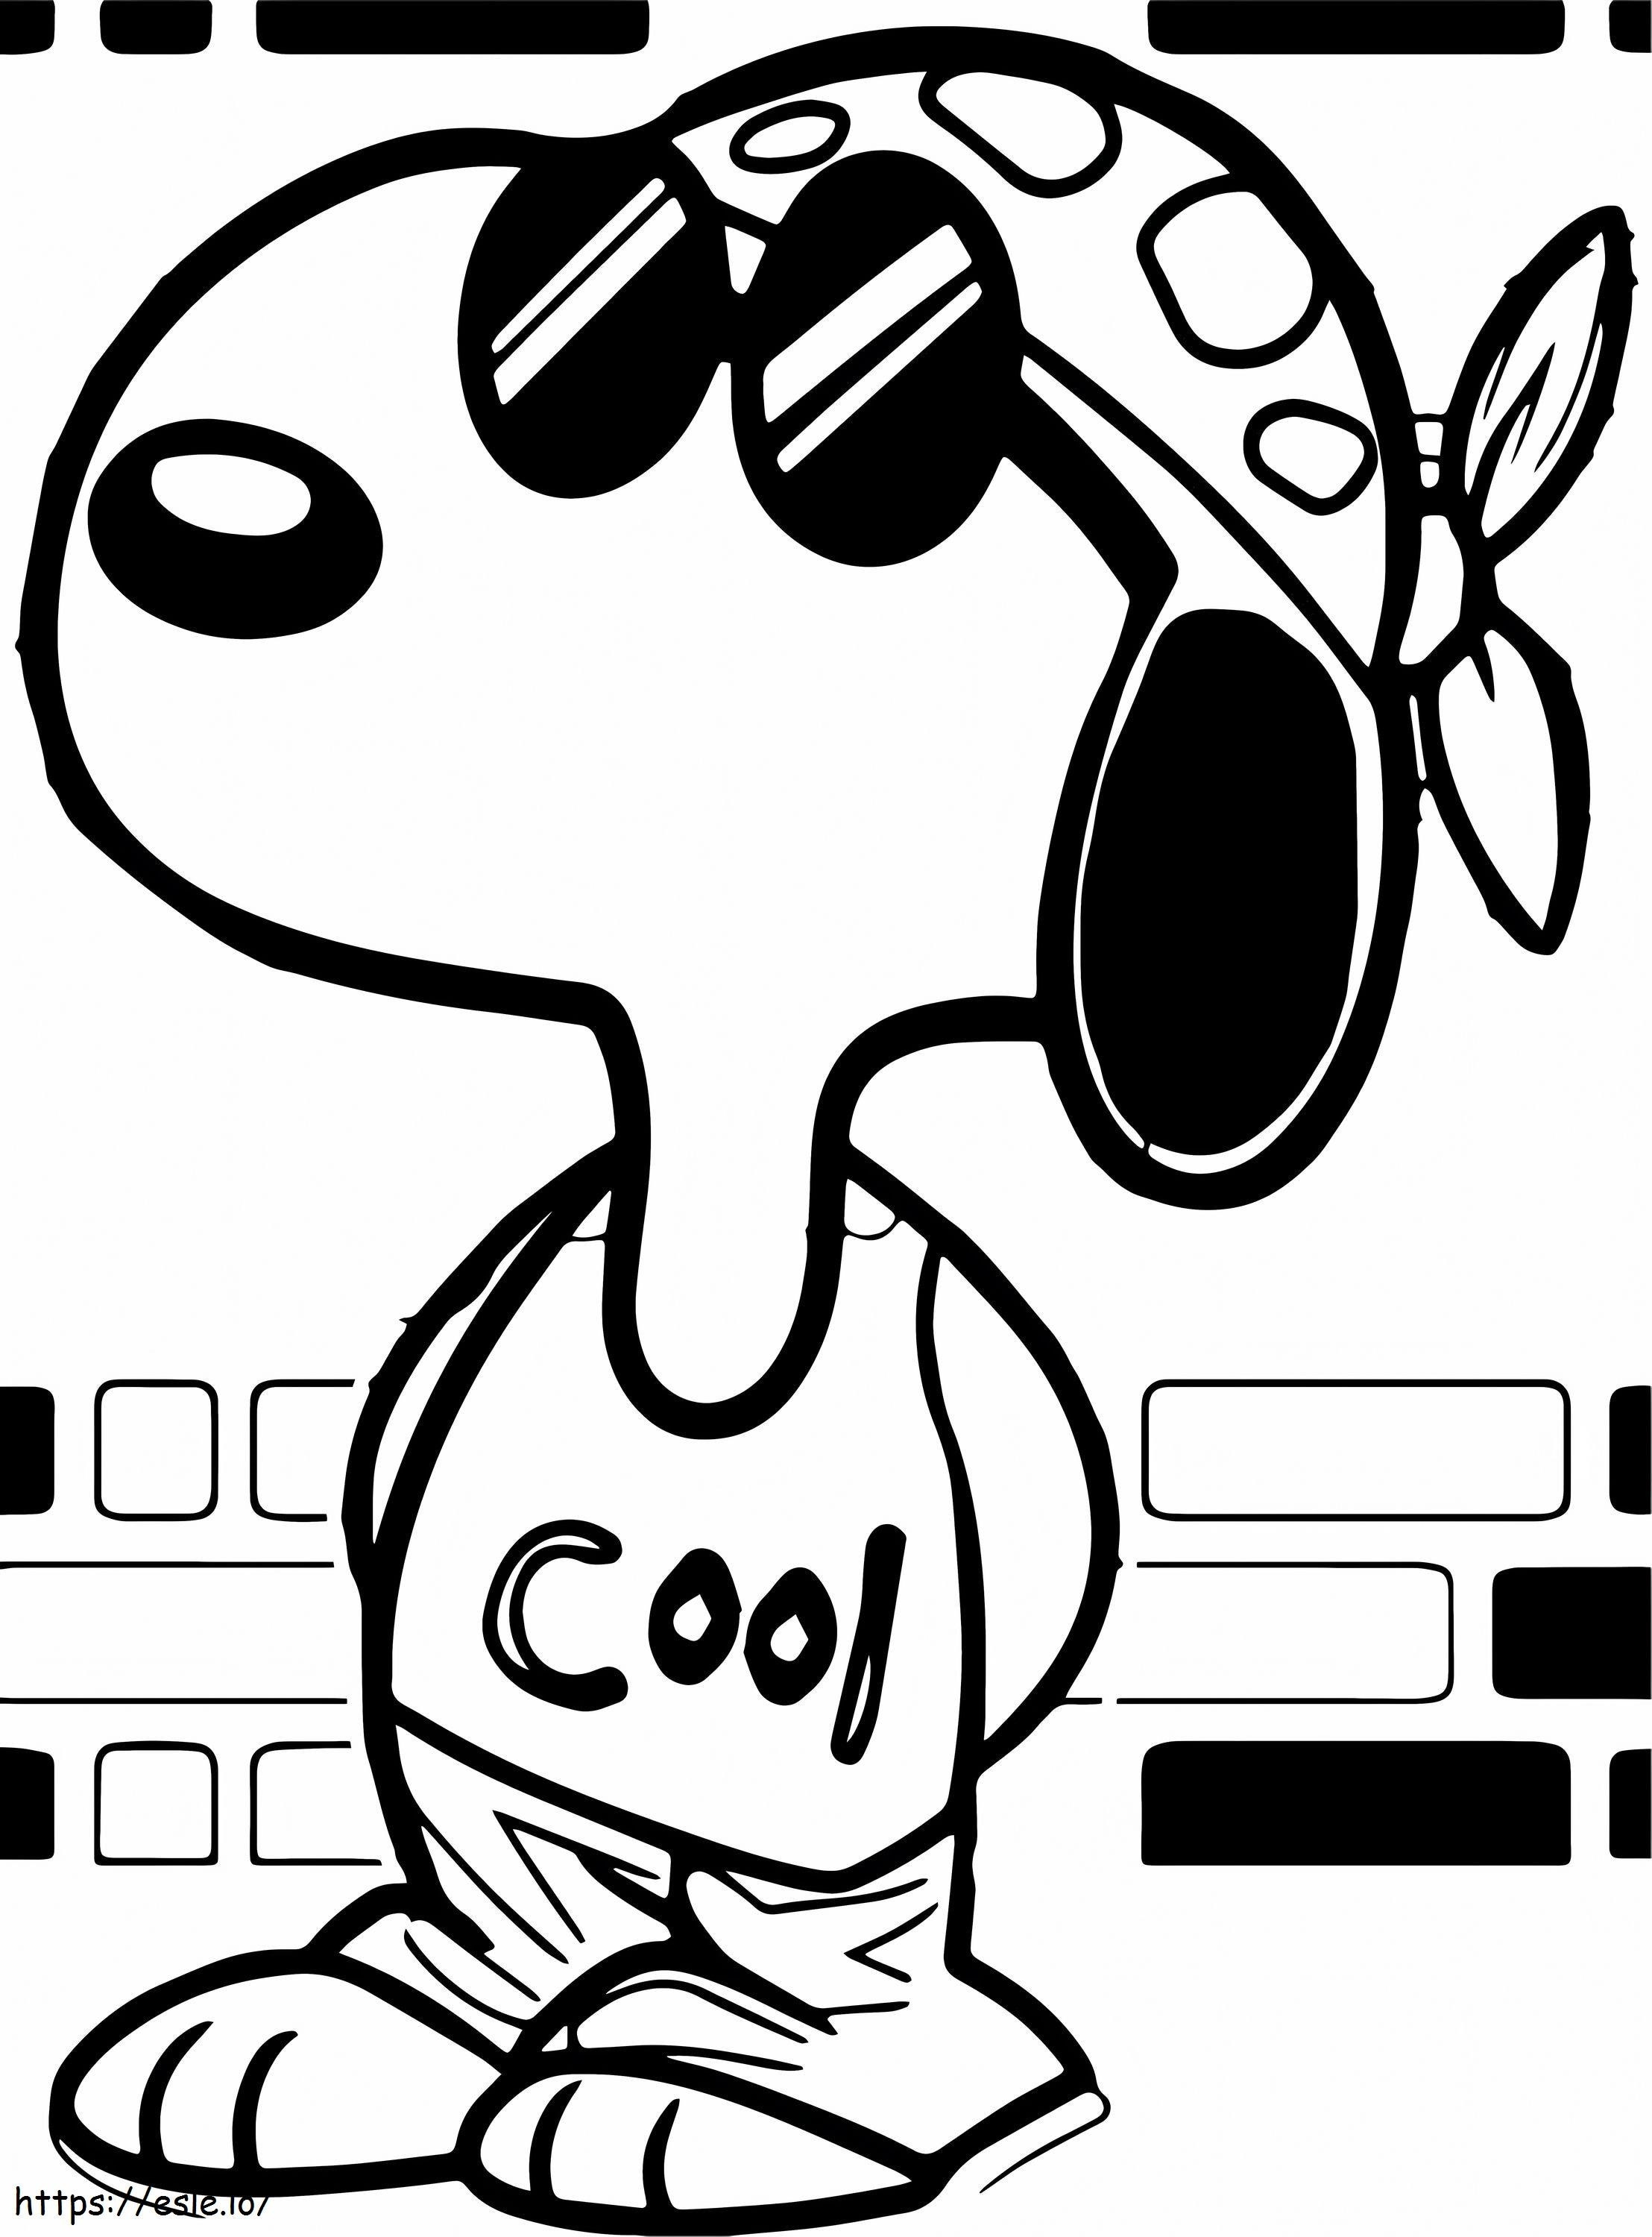 Lo stile più cool di Snoopy da colorare